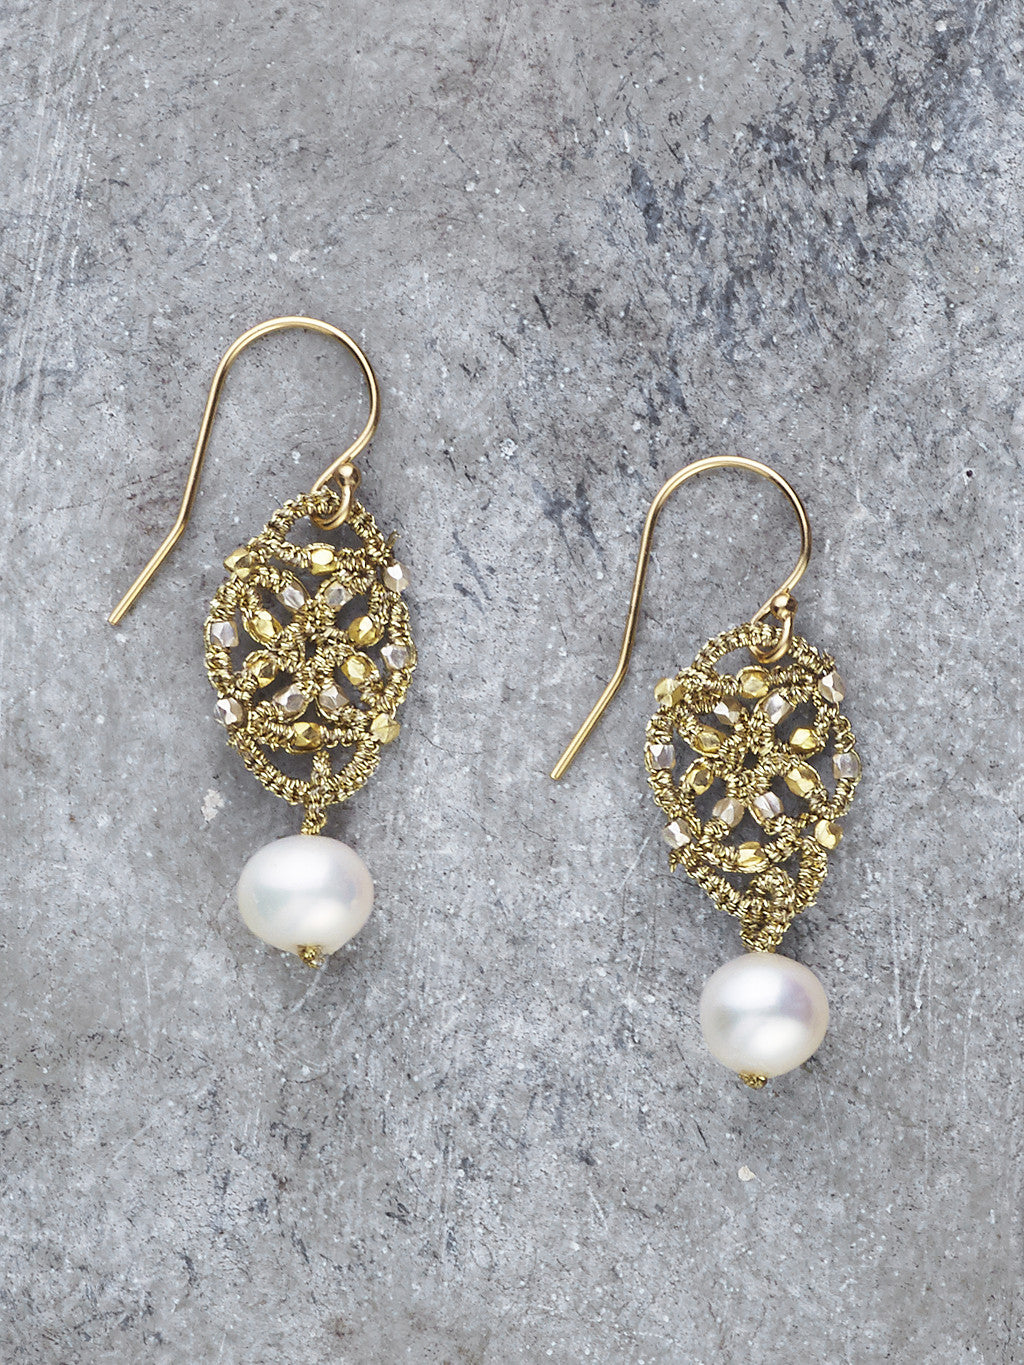 Danielle Welmond Woven Gold Thread Pearl Earrings